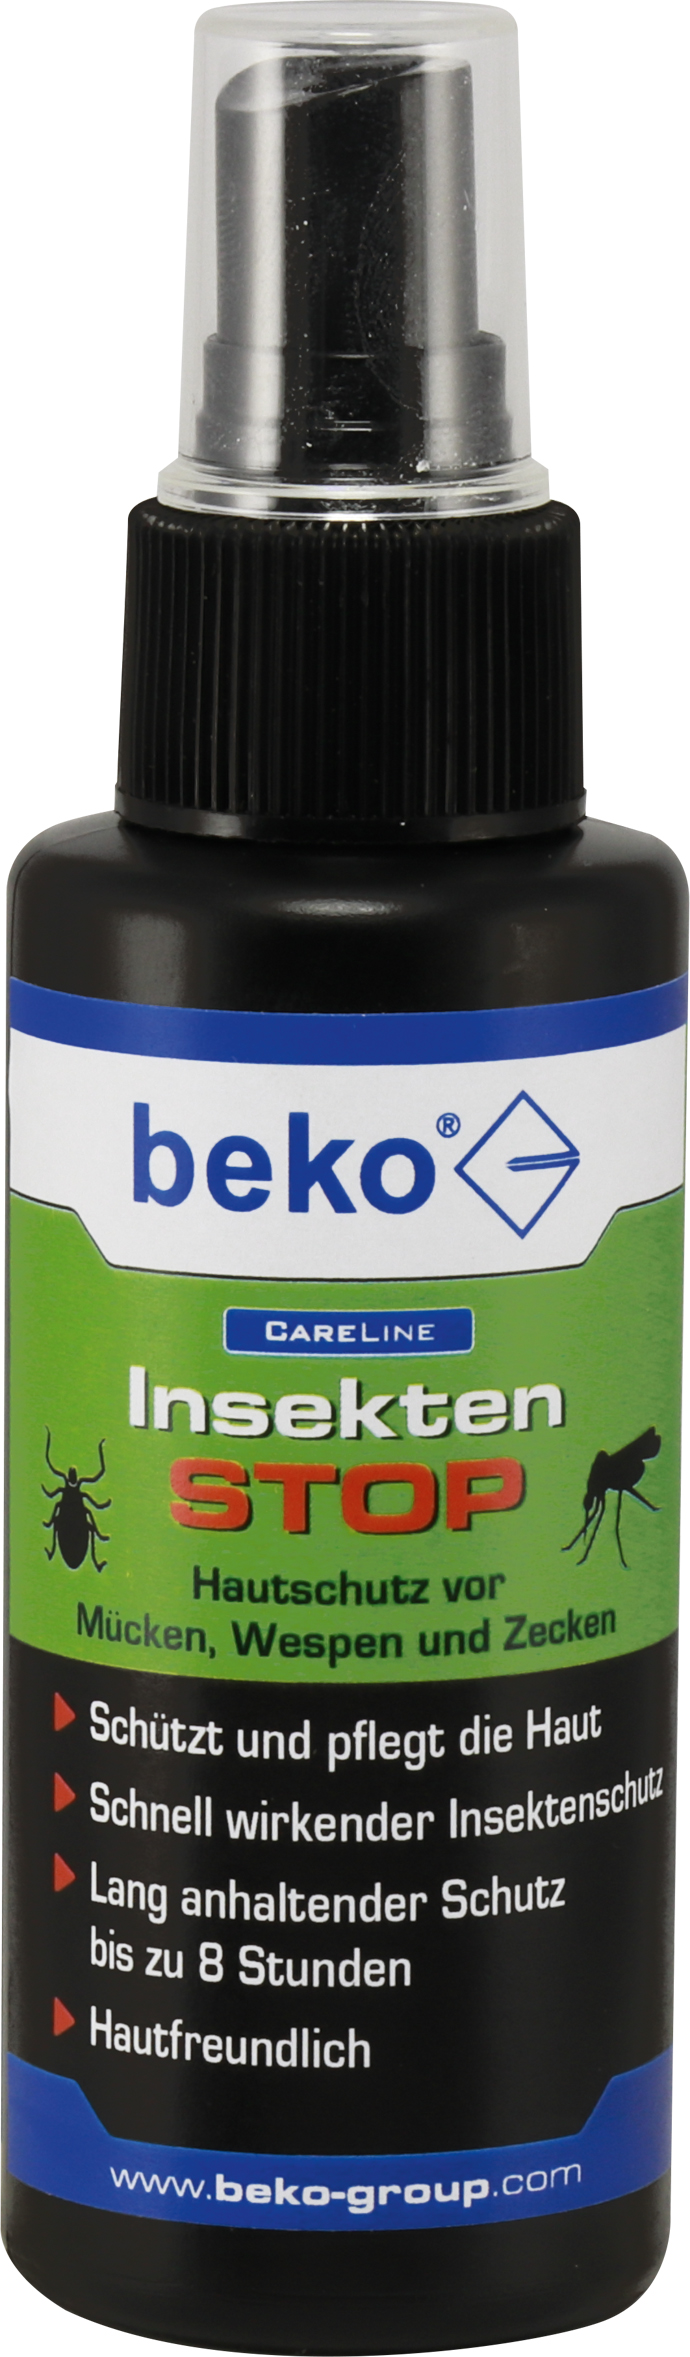 Beko Insekten-Stop 75ml 2902100